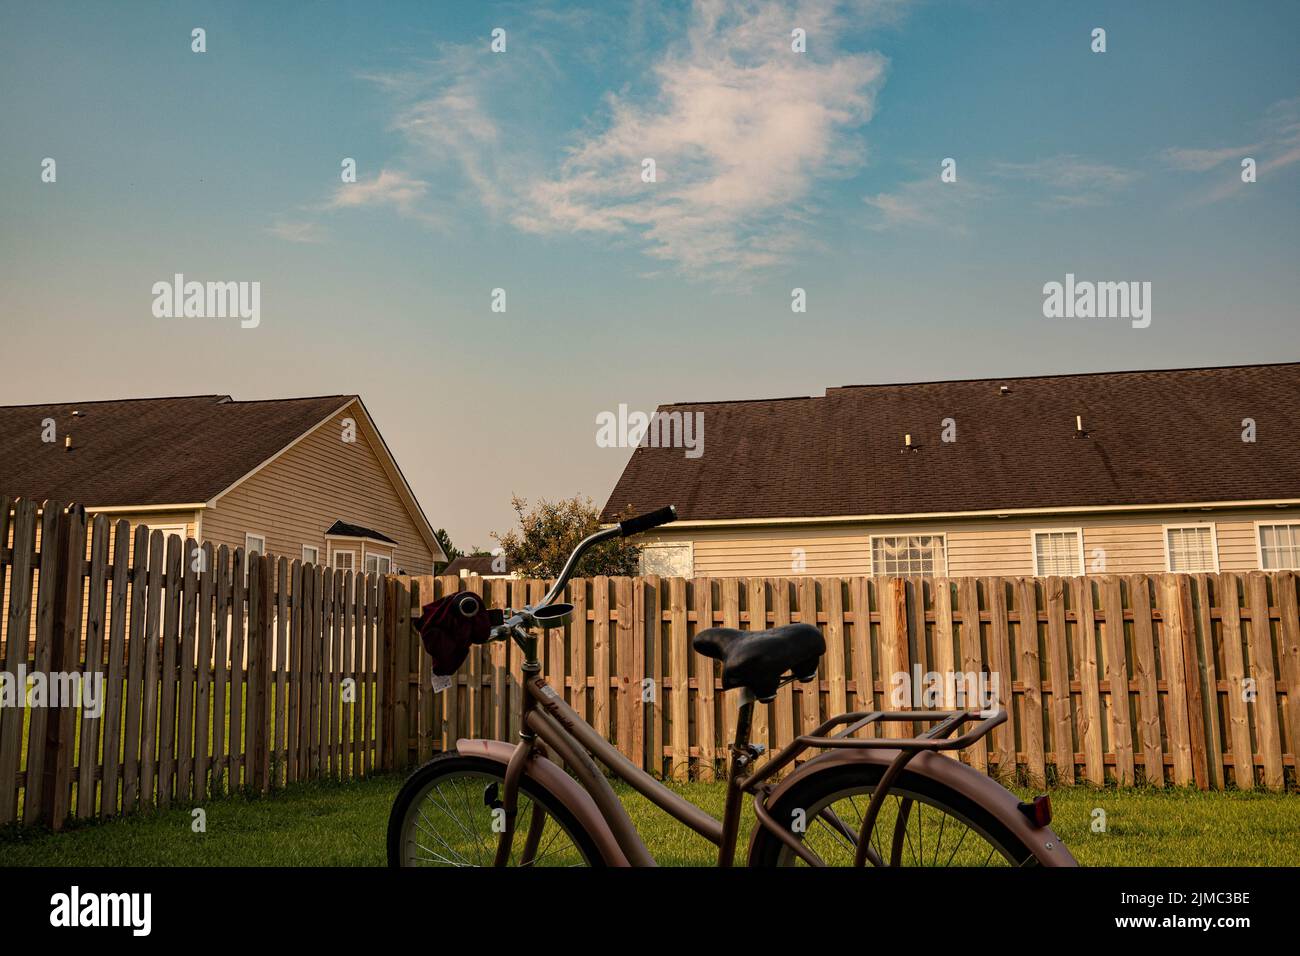 Una bicicletta parcheggiata su un prato casa accanto alla recinzione di legno con altre case visibili dietro la recinzione Foto Stock